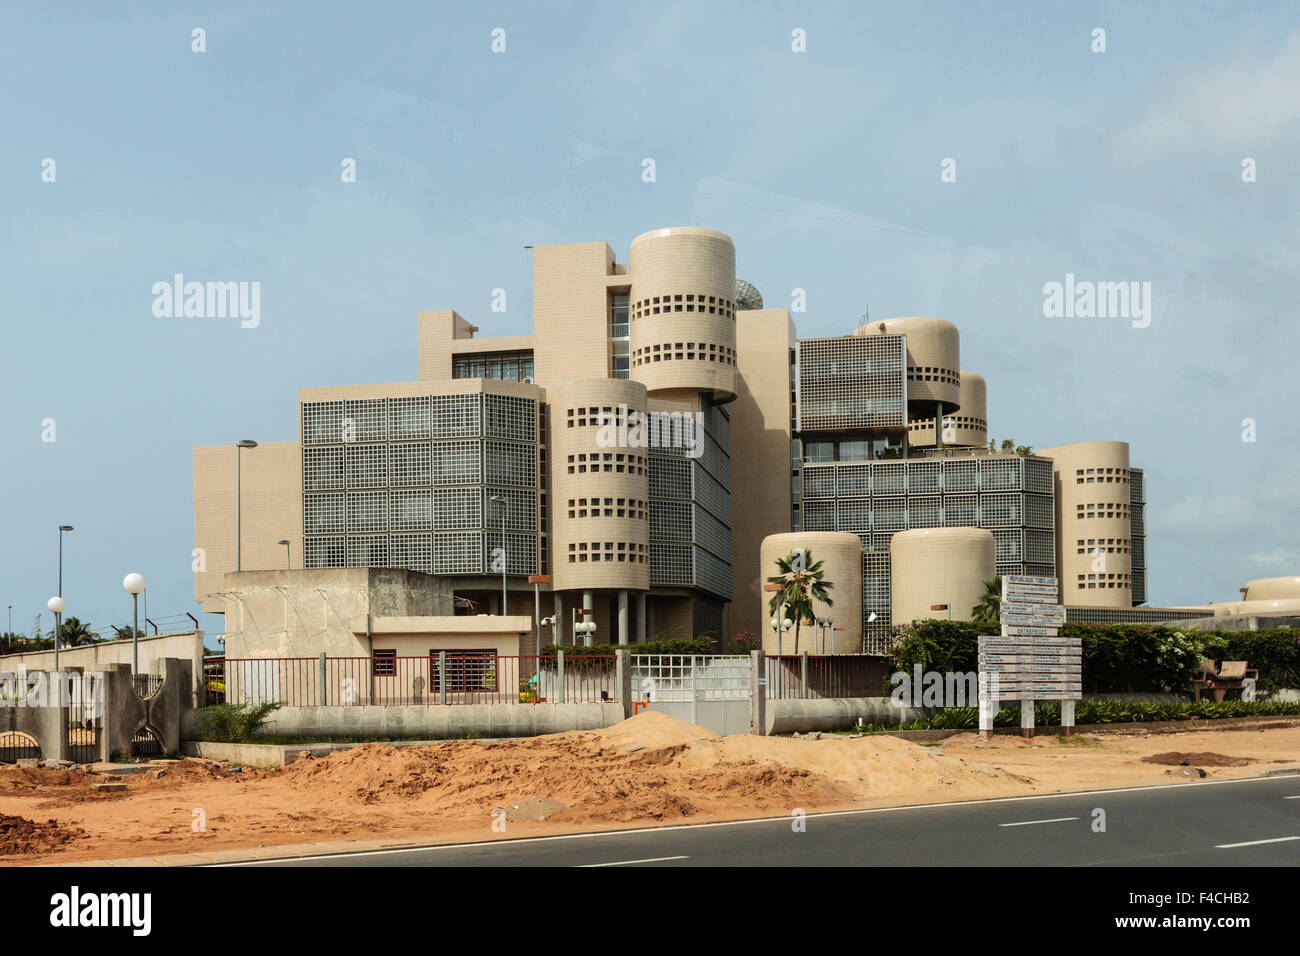 Africa, Africa occidental, Togo, Lomé. Edificio modernista a lo largo de carretera. Foto de stock